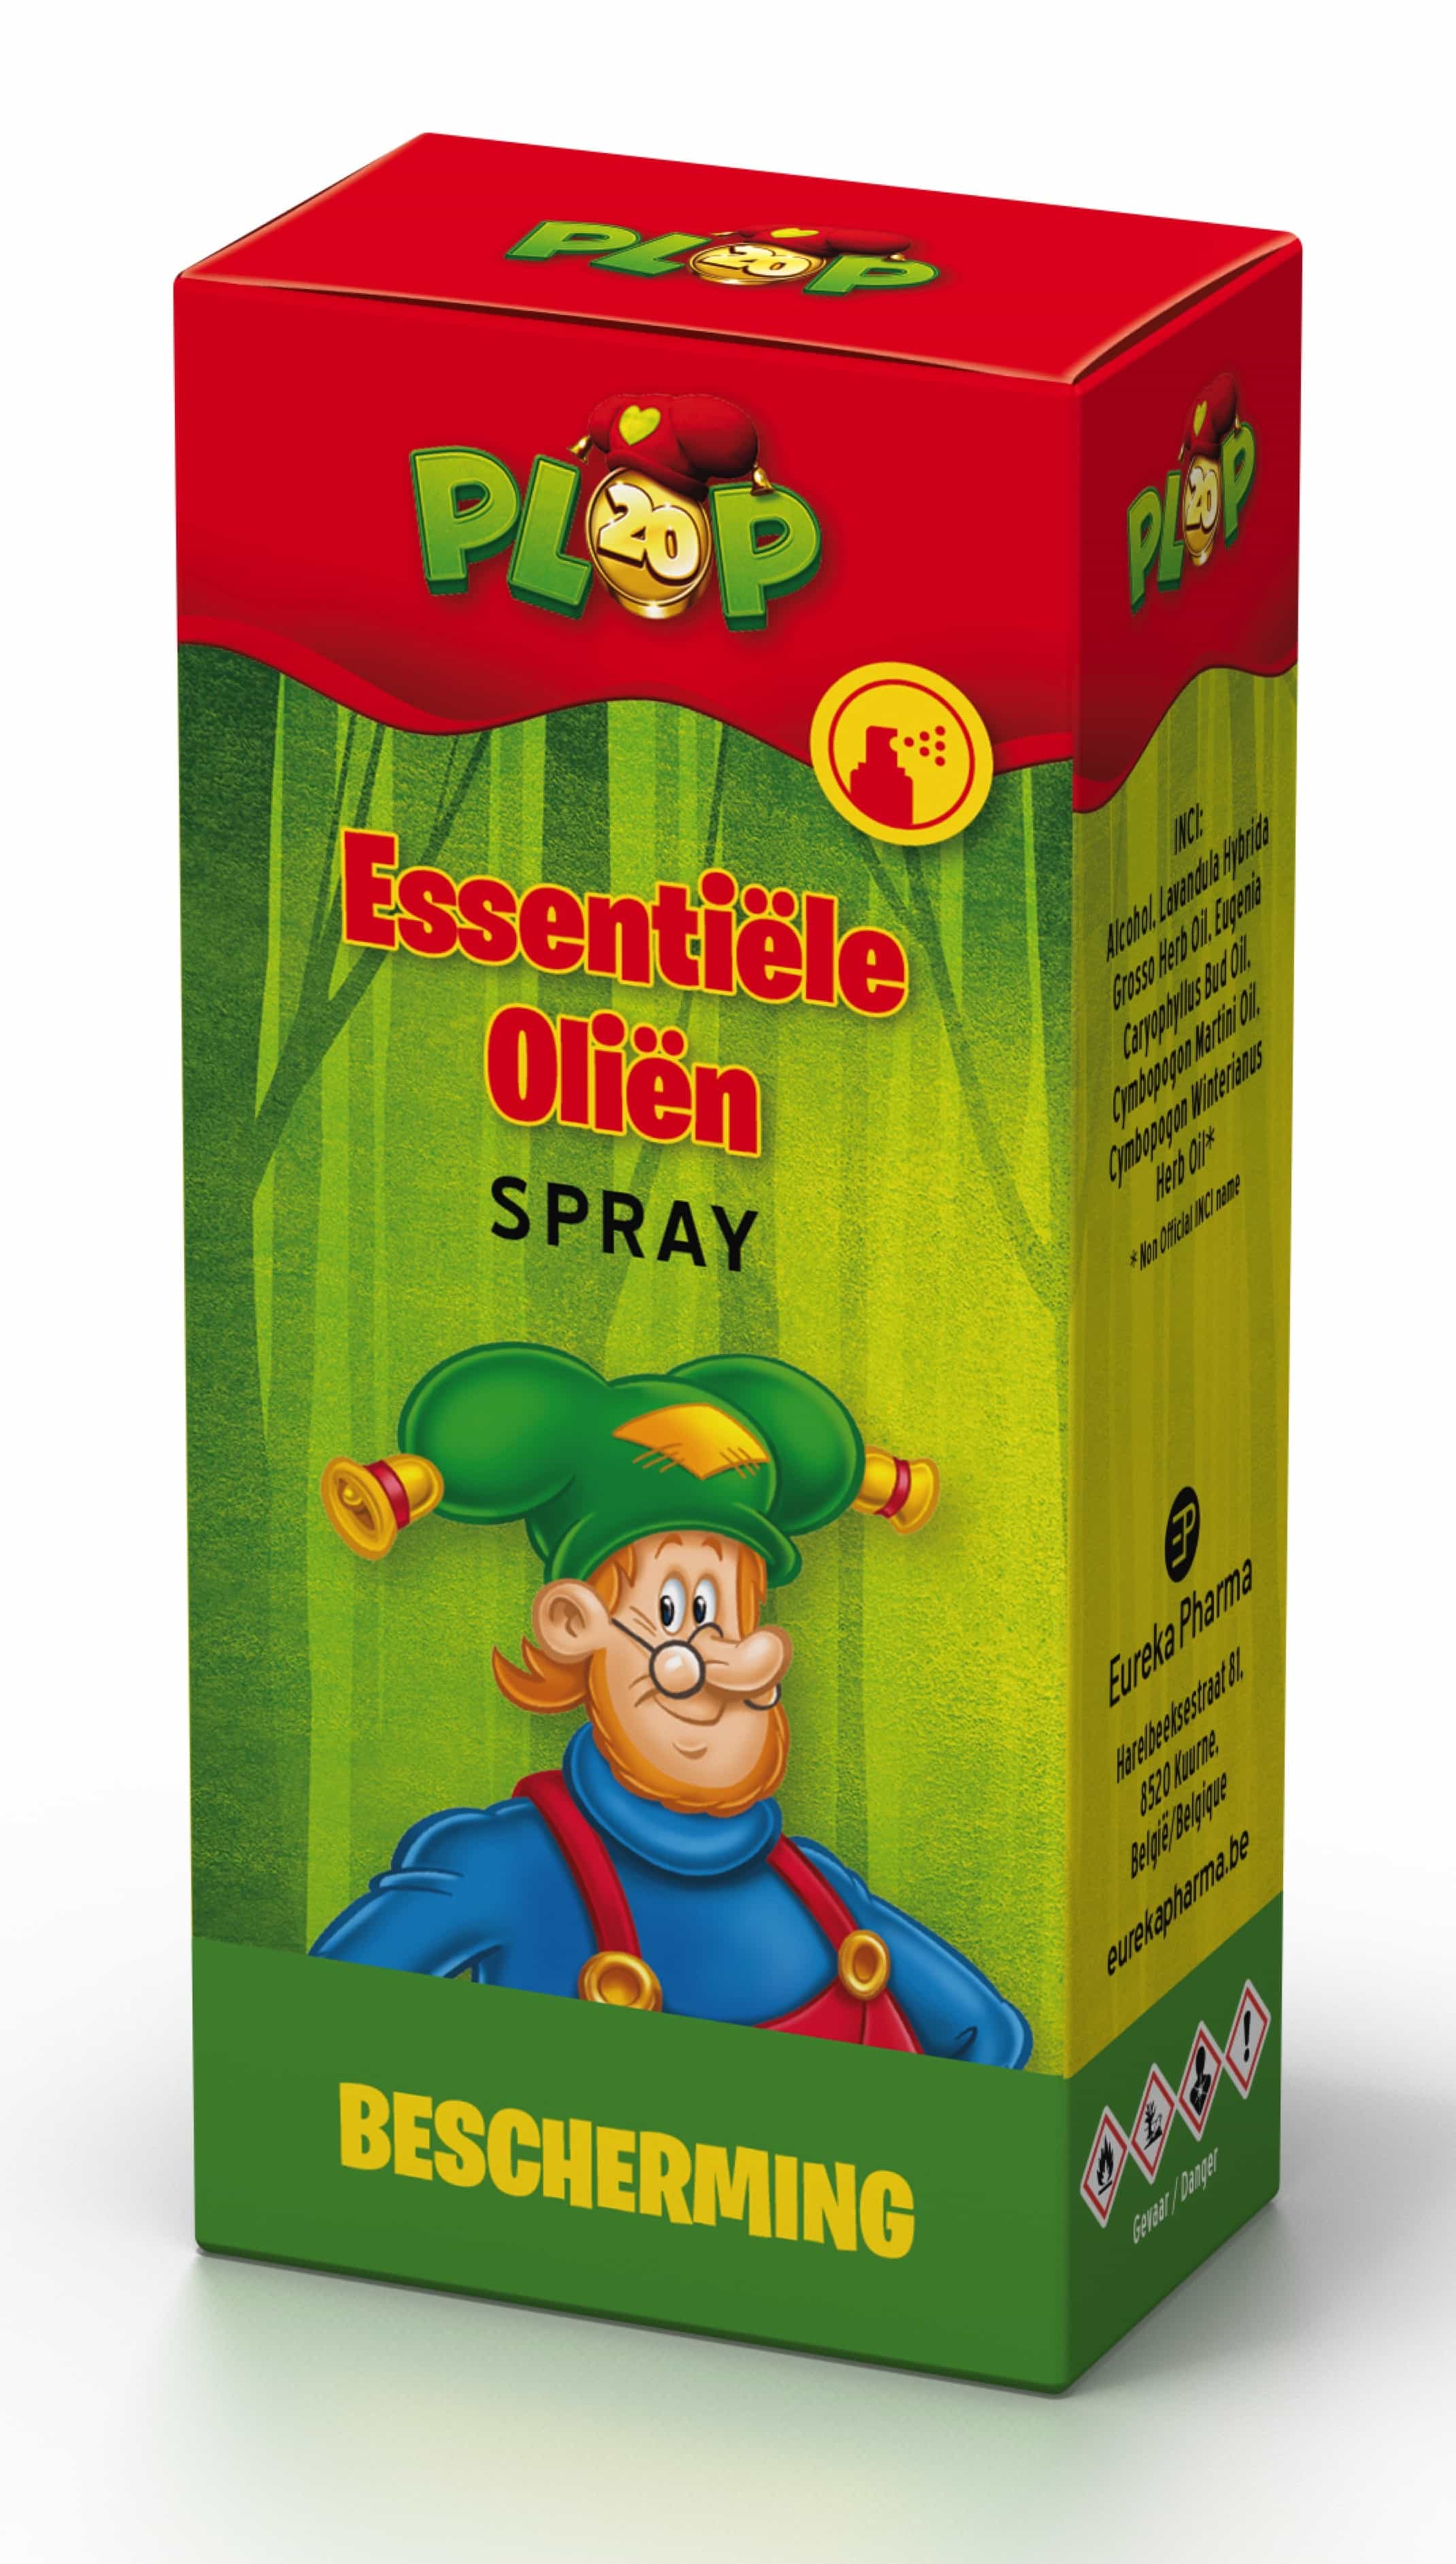 Studio 100 Plop Essentiële Olie Spray Bescherming